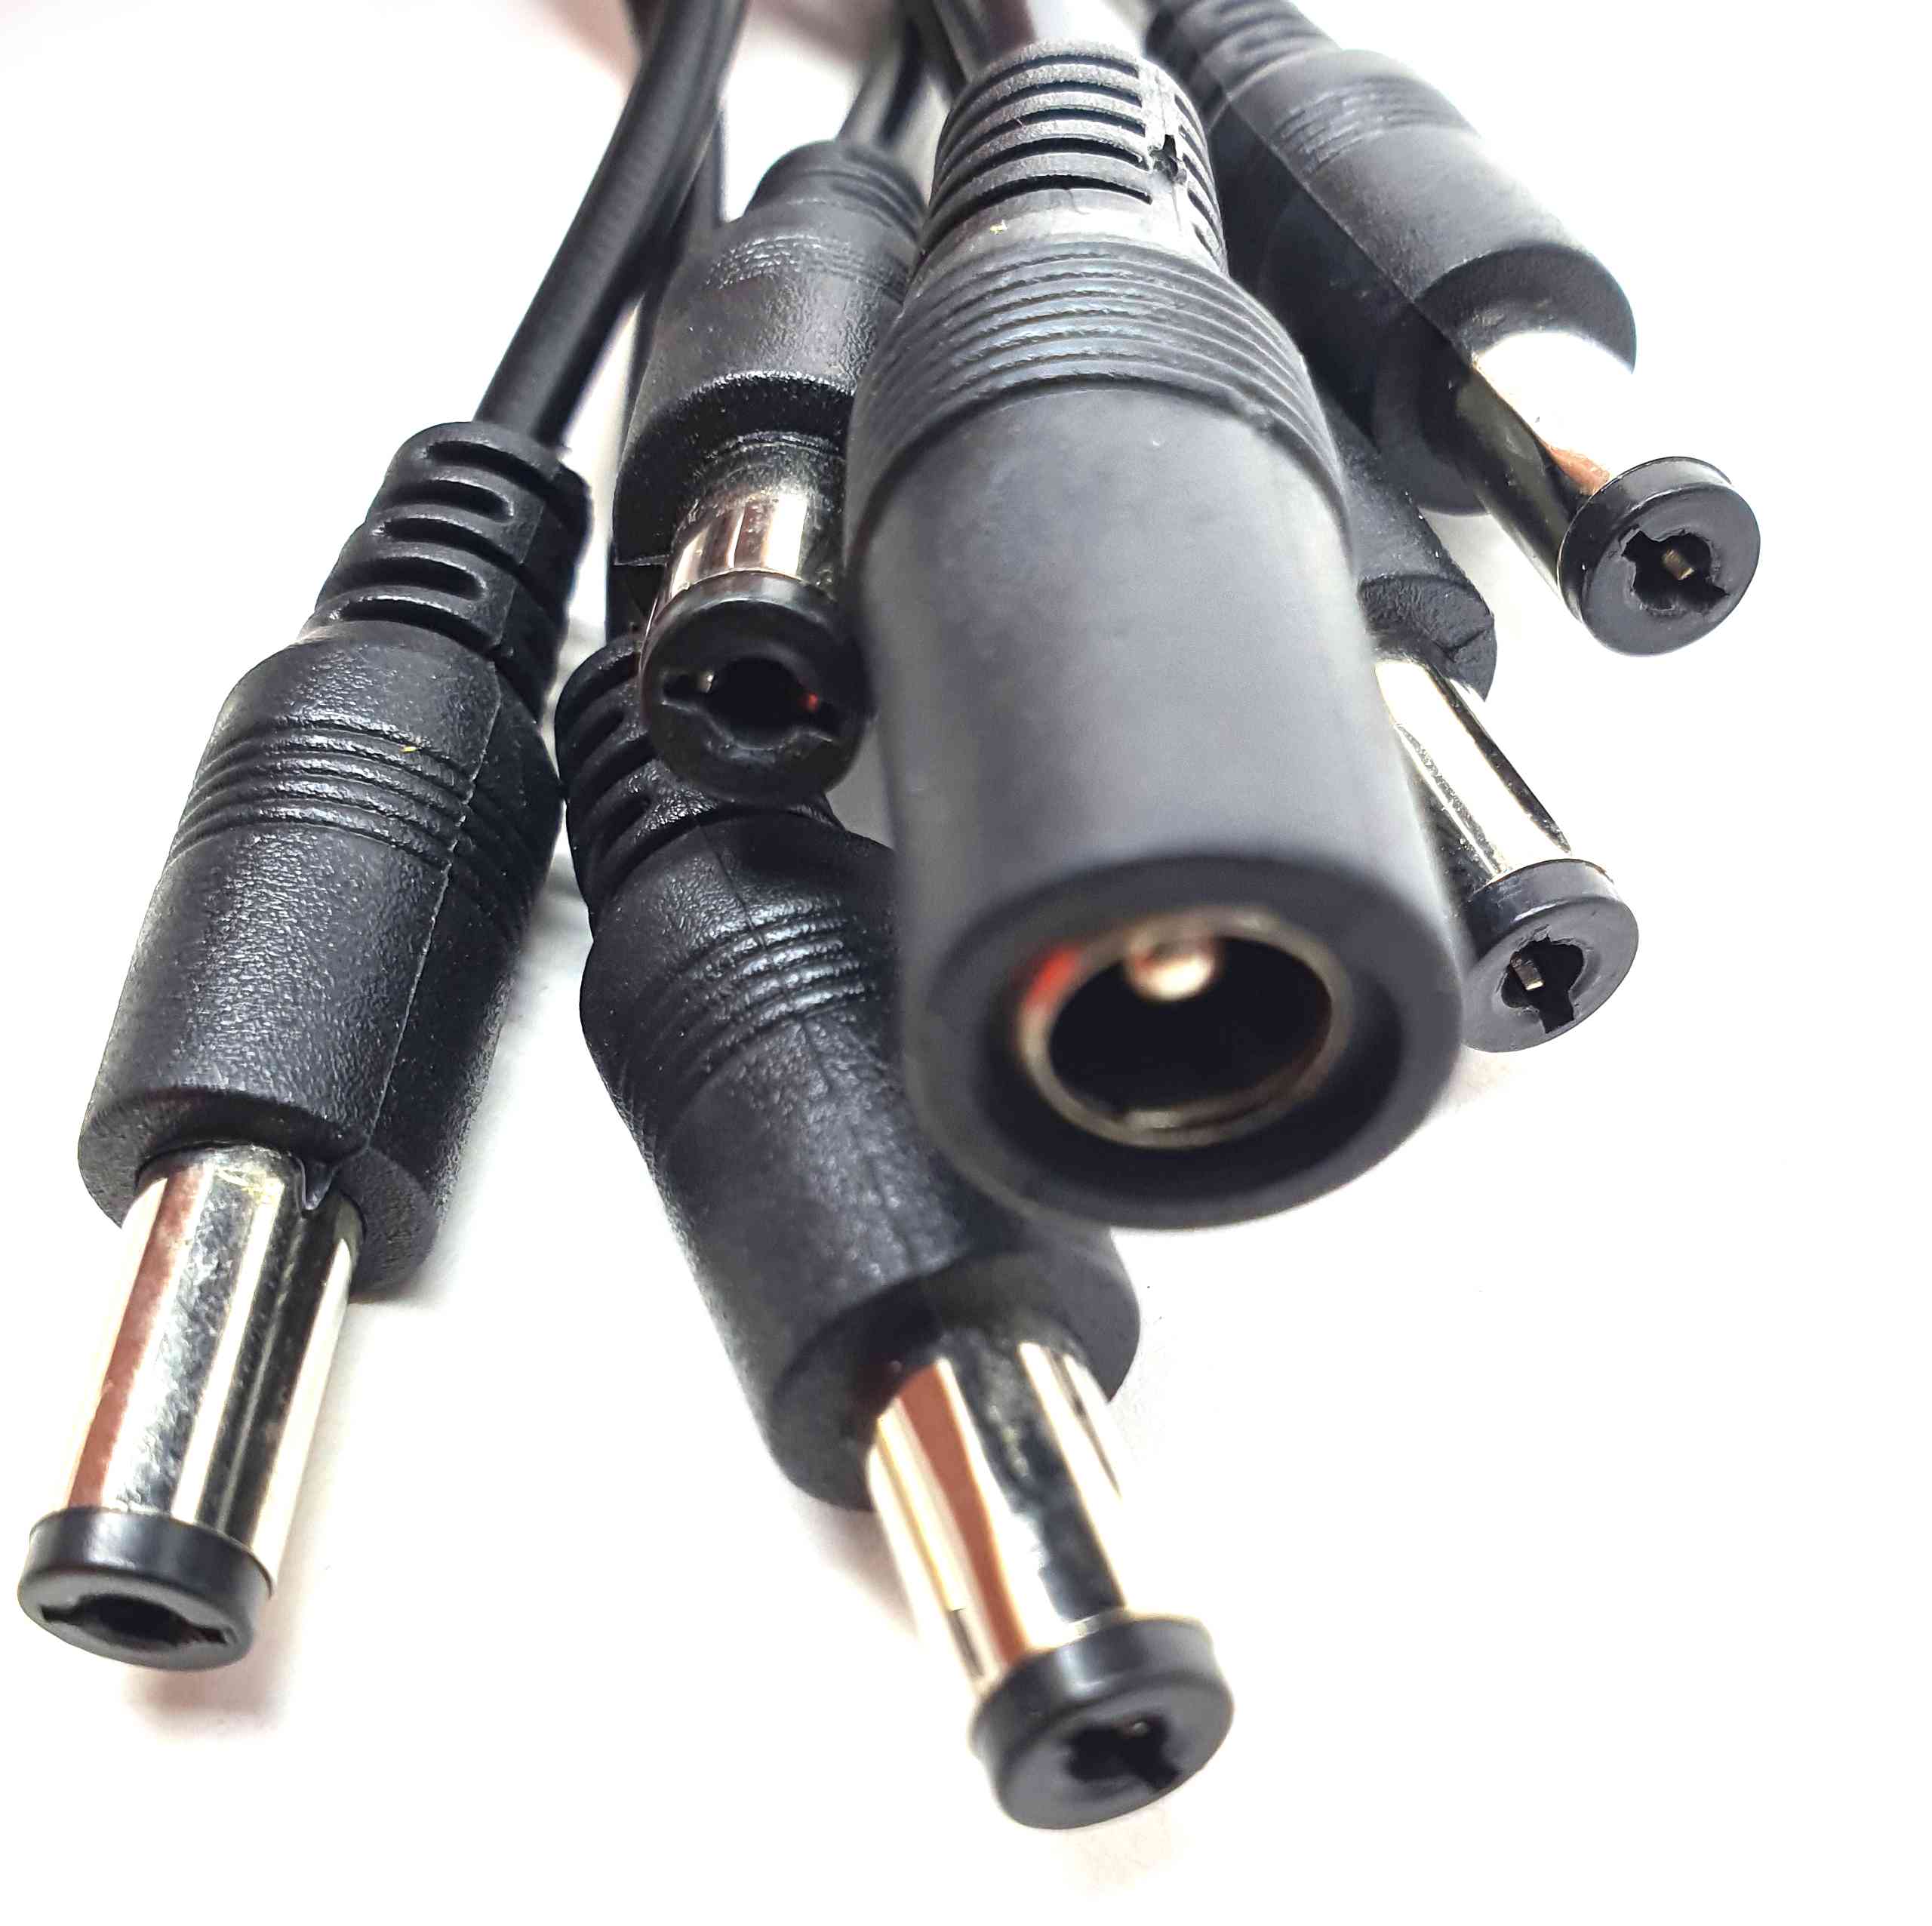 10mm2 RADOX 155 High Voltage Cable - 84100295 – Big Orange Cable